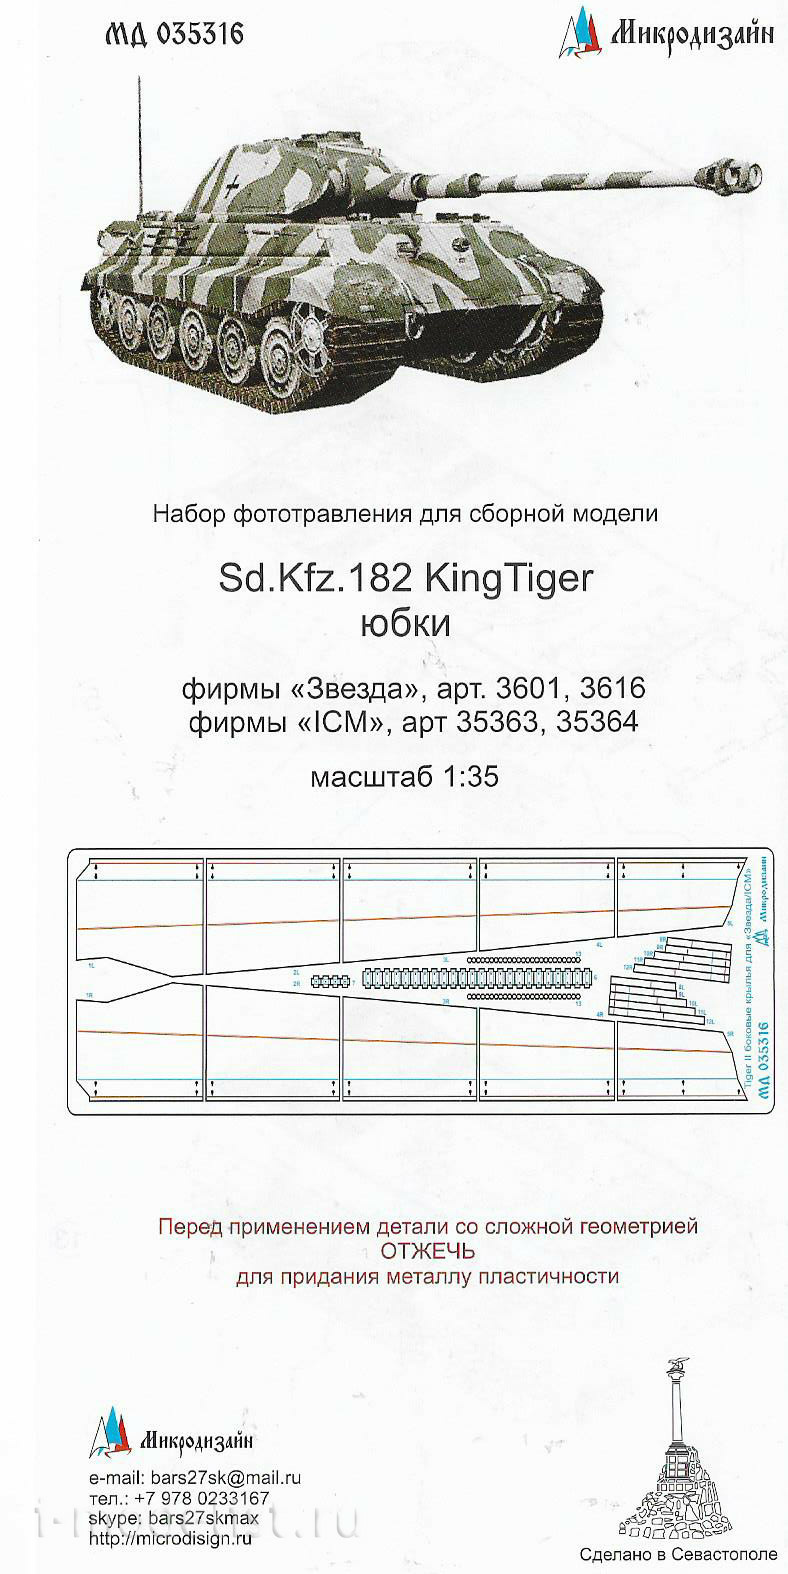 035316 Microdesign 1/35 Sd.Kfz.182 Royal Tiger skirts (Zvezda/ICM)